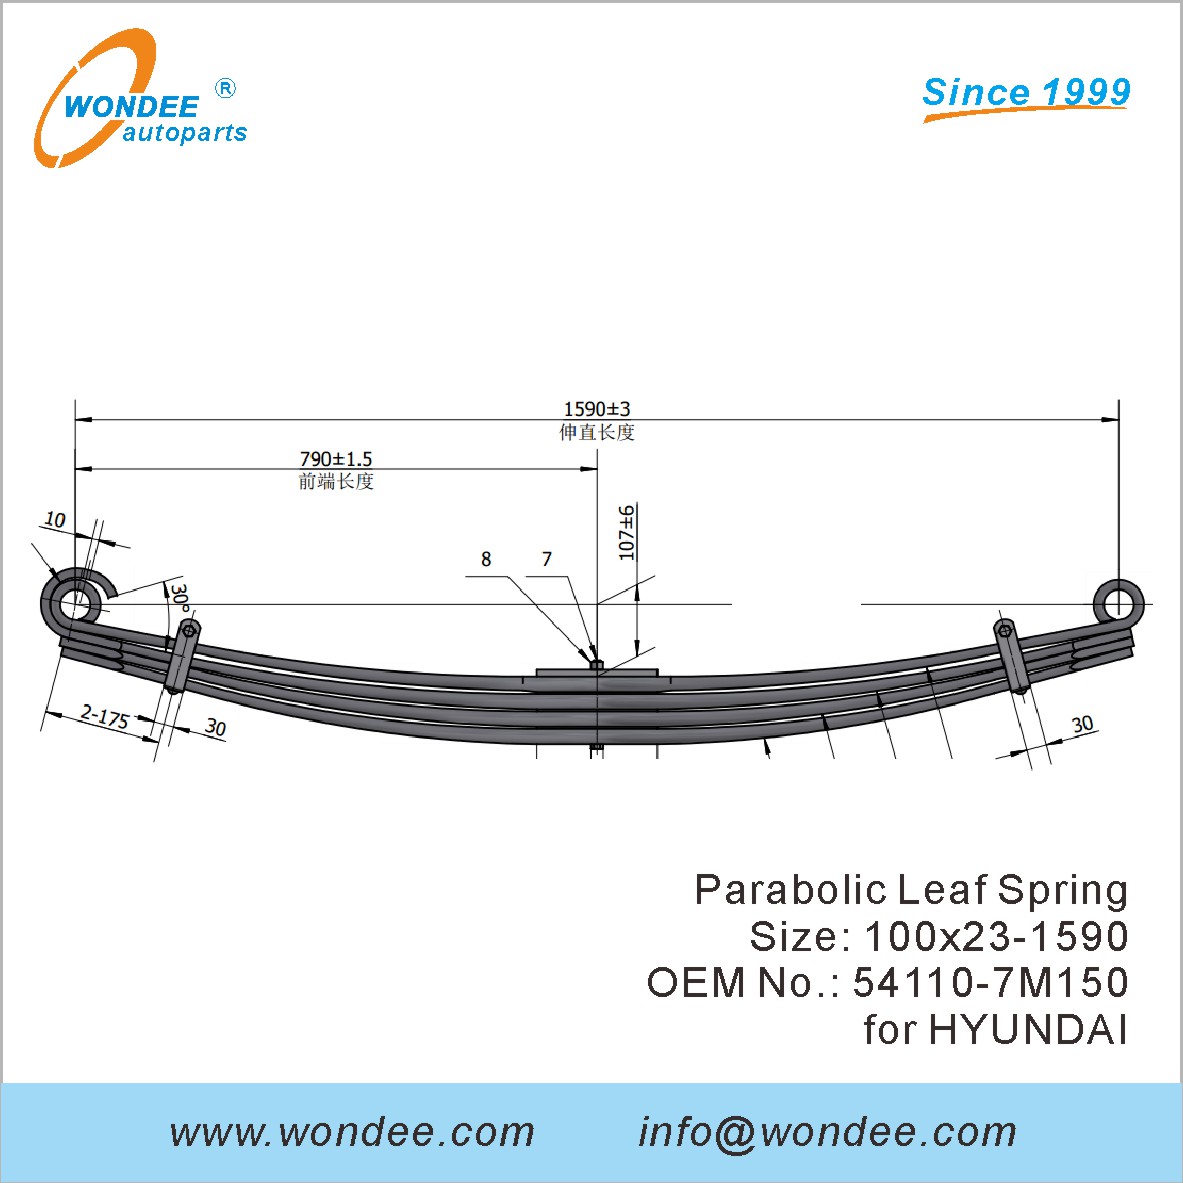 WONDEE heavy duty parabolic Leaf Spring OEM 54110-7M150 for HYUNDAI